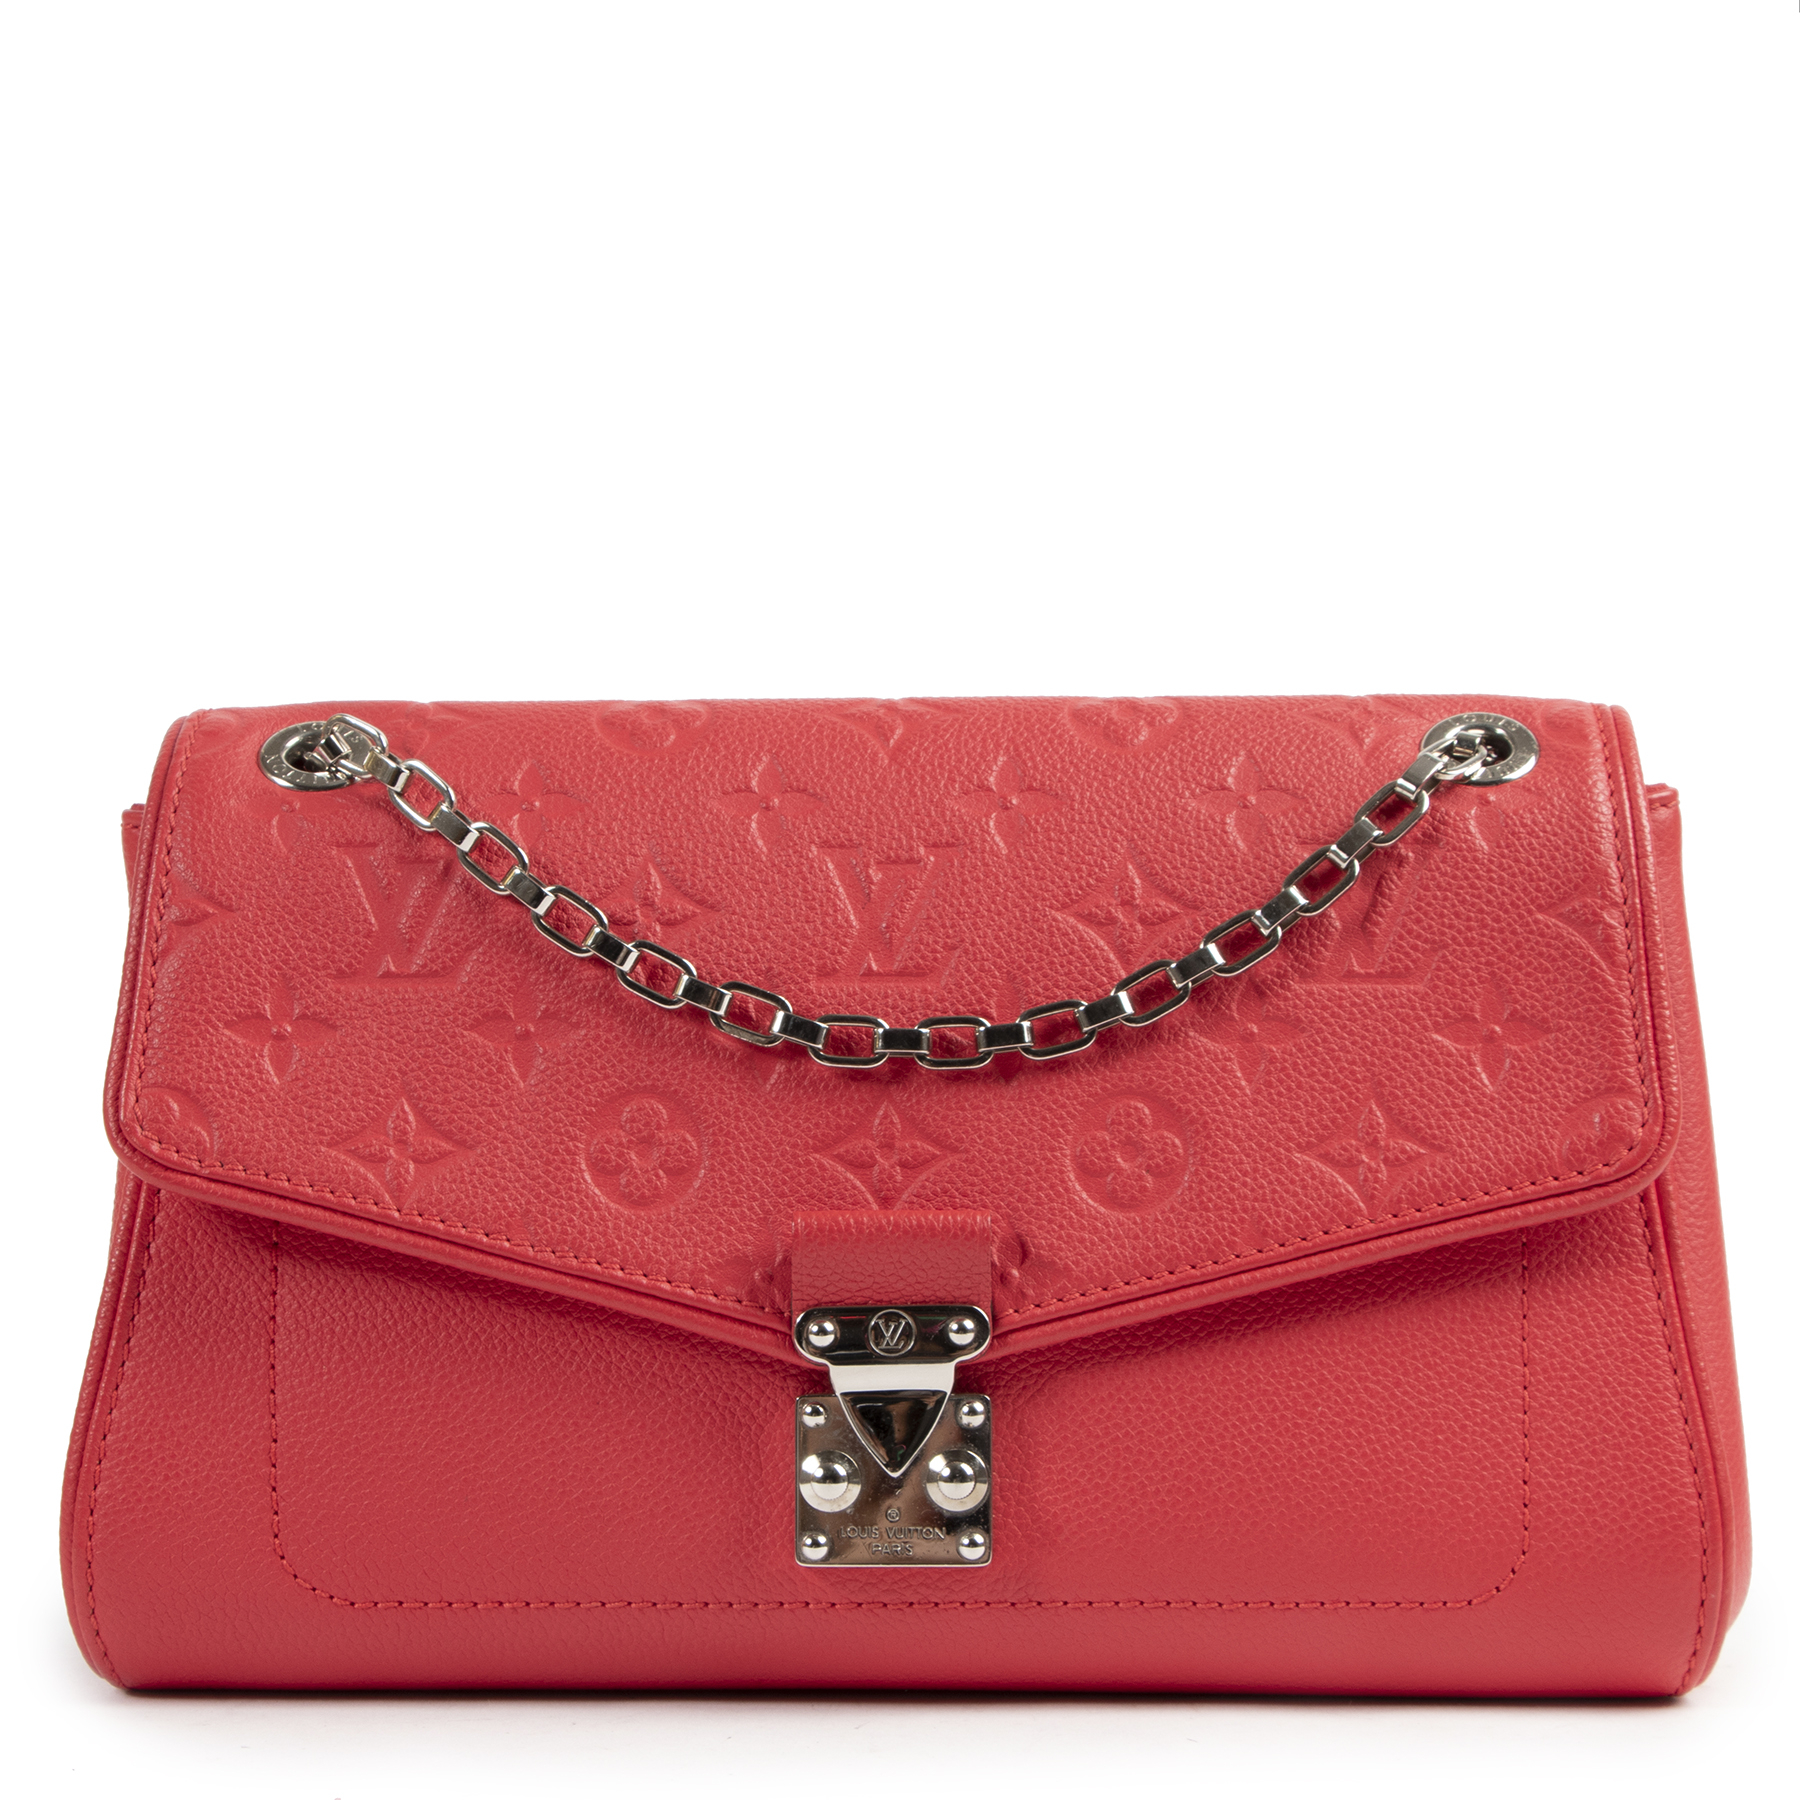 Louis Vuitton Saint Germain MM Pink Empreinte Chain Bag